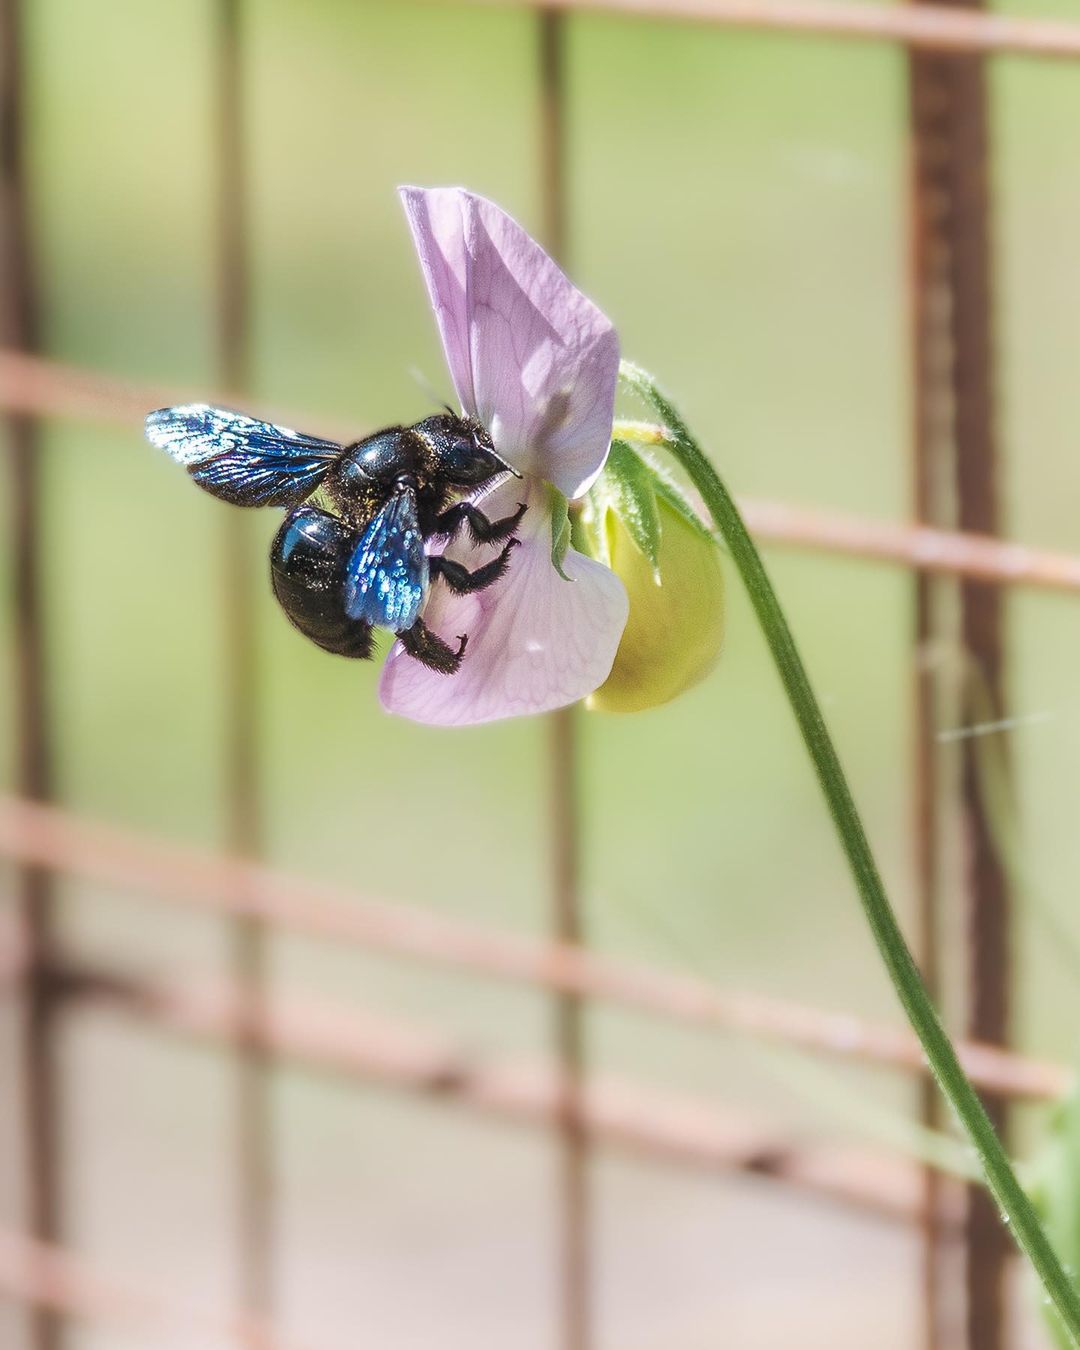 Gestern habe ich diese riesige blaue Holzbiene im Garten gesehen! Ein unglaublich schönes Tier. Die vielen Totholz-Haufen sind sicher von Vorteil, damit sie sich bei uns wohl fühlt :)
.
#nachbarschaftsgarten #urbangardening #garten #gemeinschaftsgarten #zürichcity #seebach #urbanesgärtnern #städtischergarten #nachhaltigegärten #holzbiene #blaueholzbiene #insektenfotografie #stadtinsekten #stadtwildtiere #insektenfreundlich #insektenfreundlichergarten #naturgarten